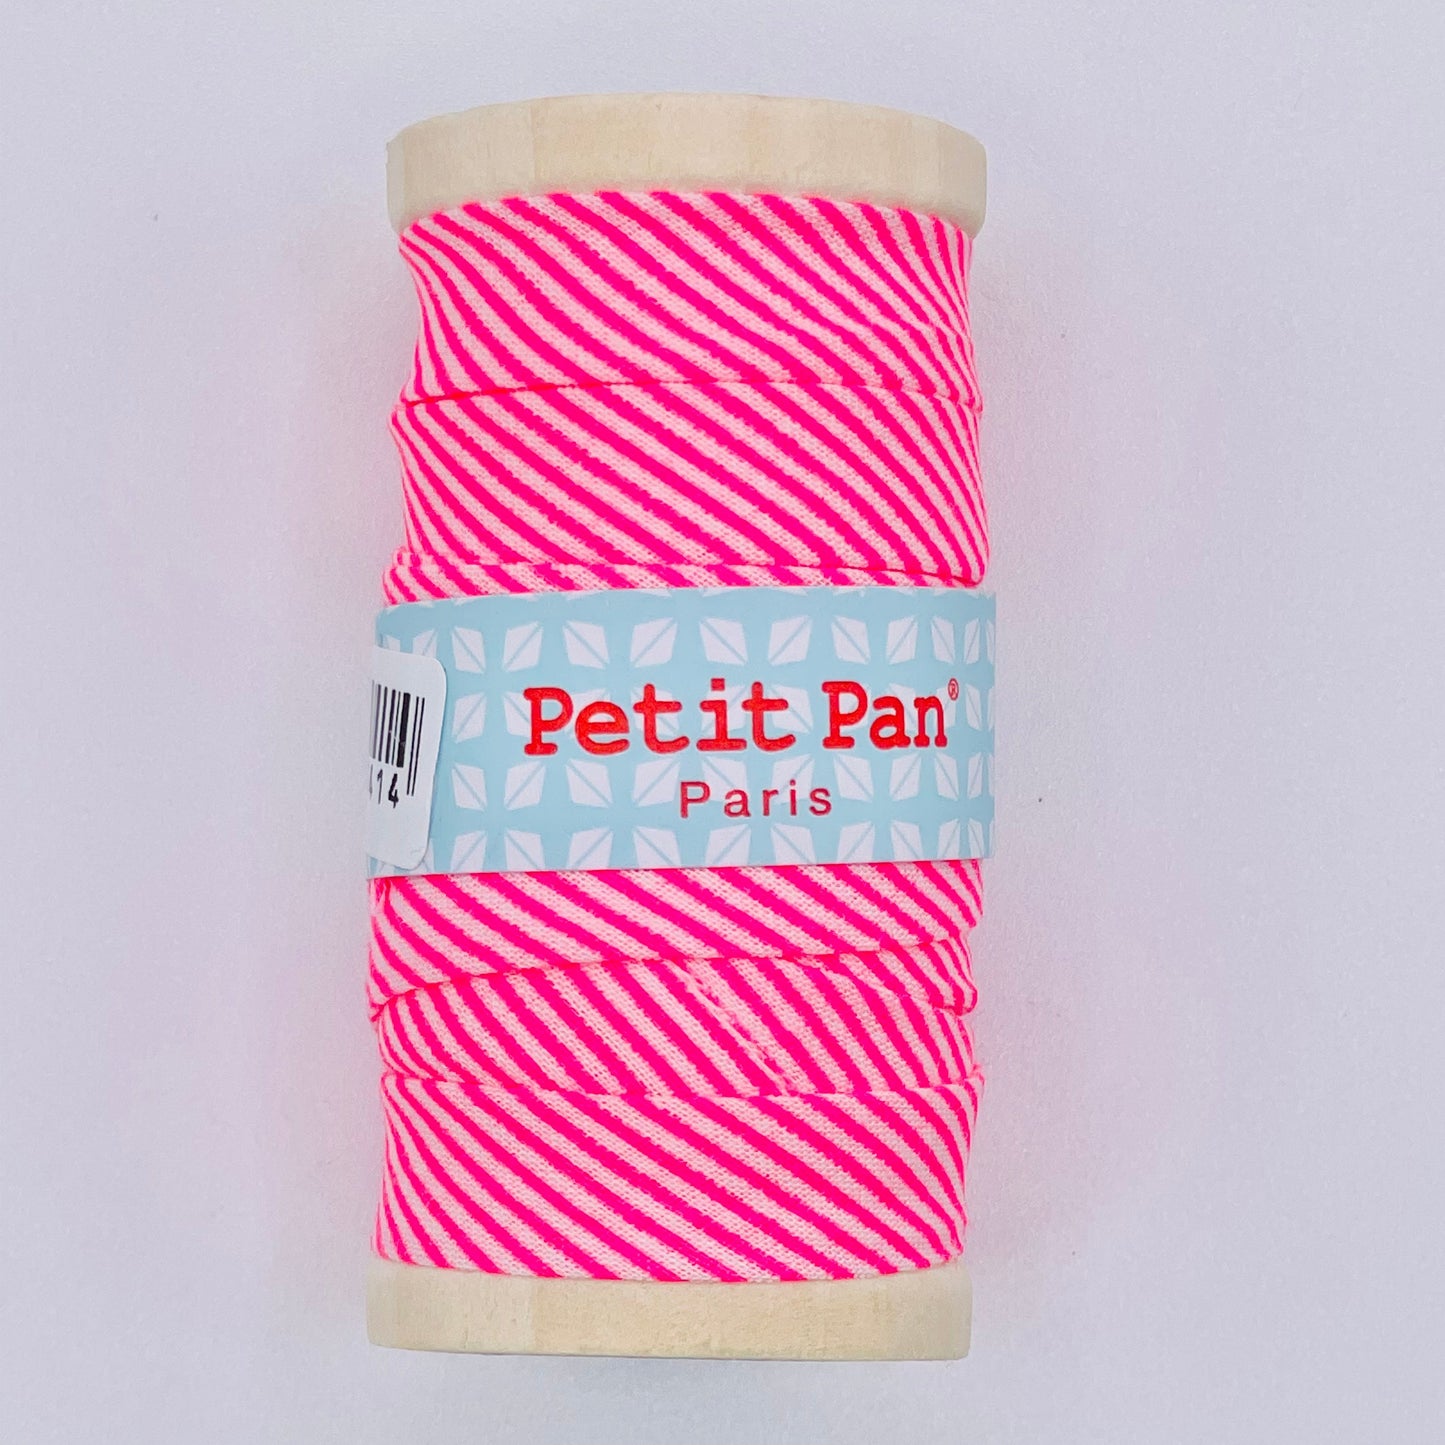 Petit Pan Neon Pink Stripe Bias Binding